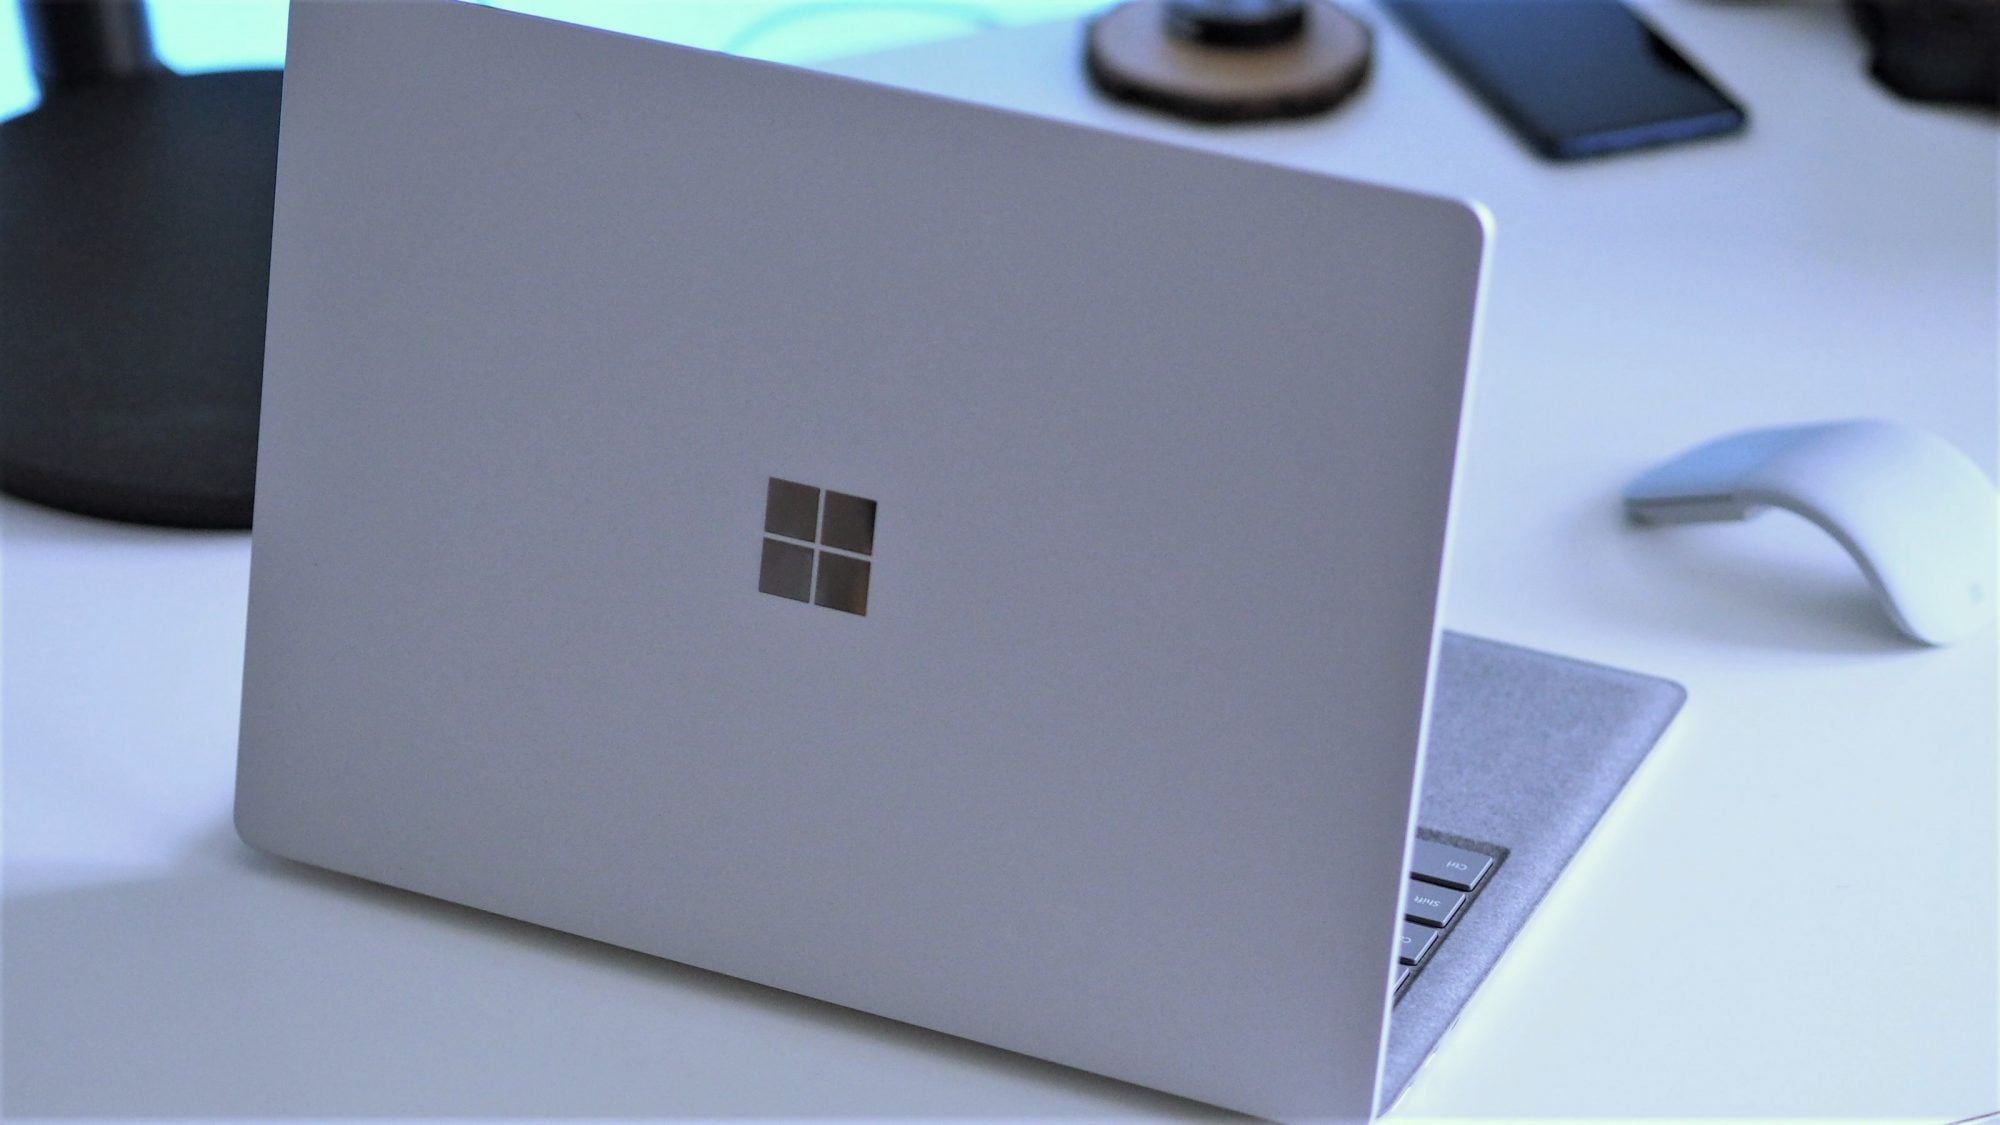 Microsoft Surface günstiger zum Valentinstag 2021. Bis zu 20% 28